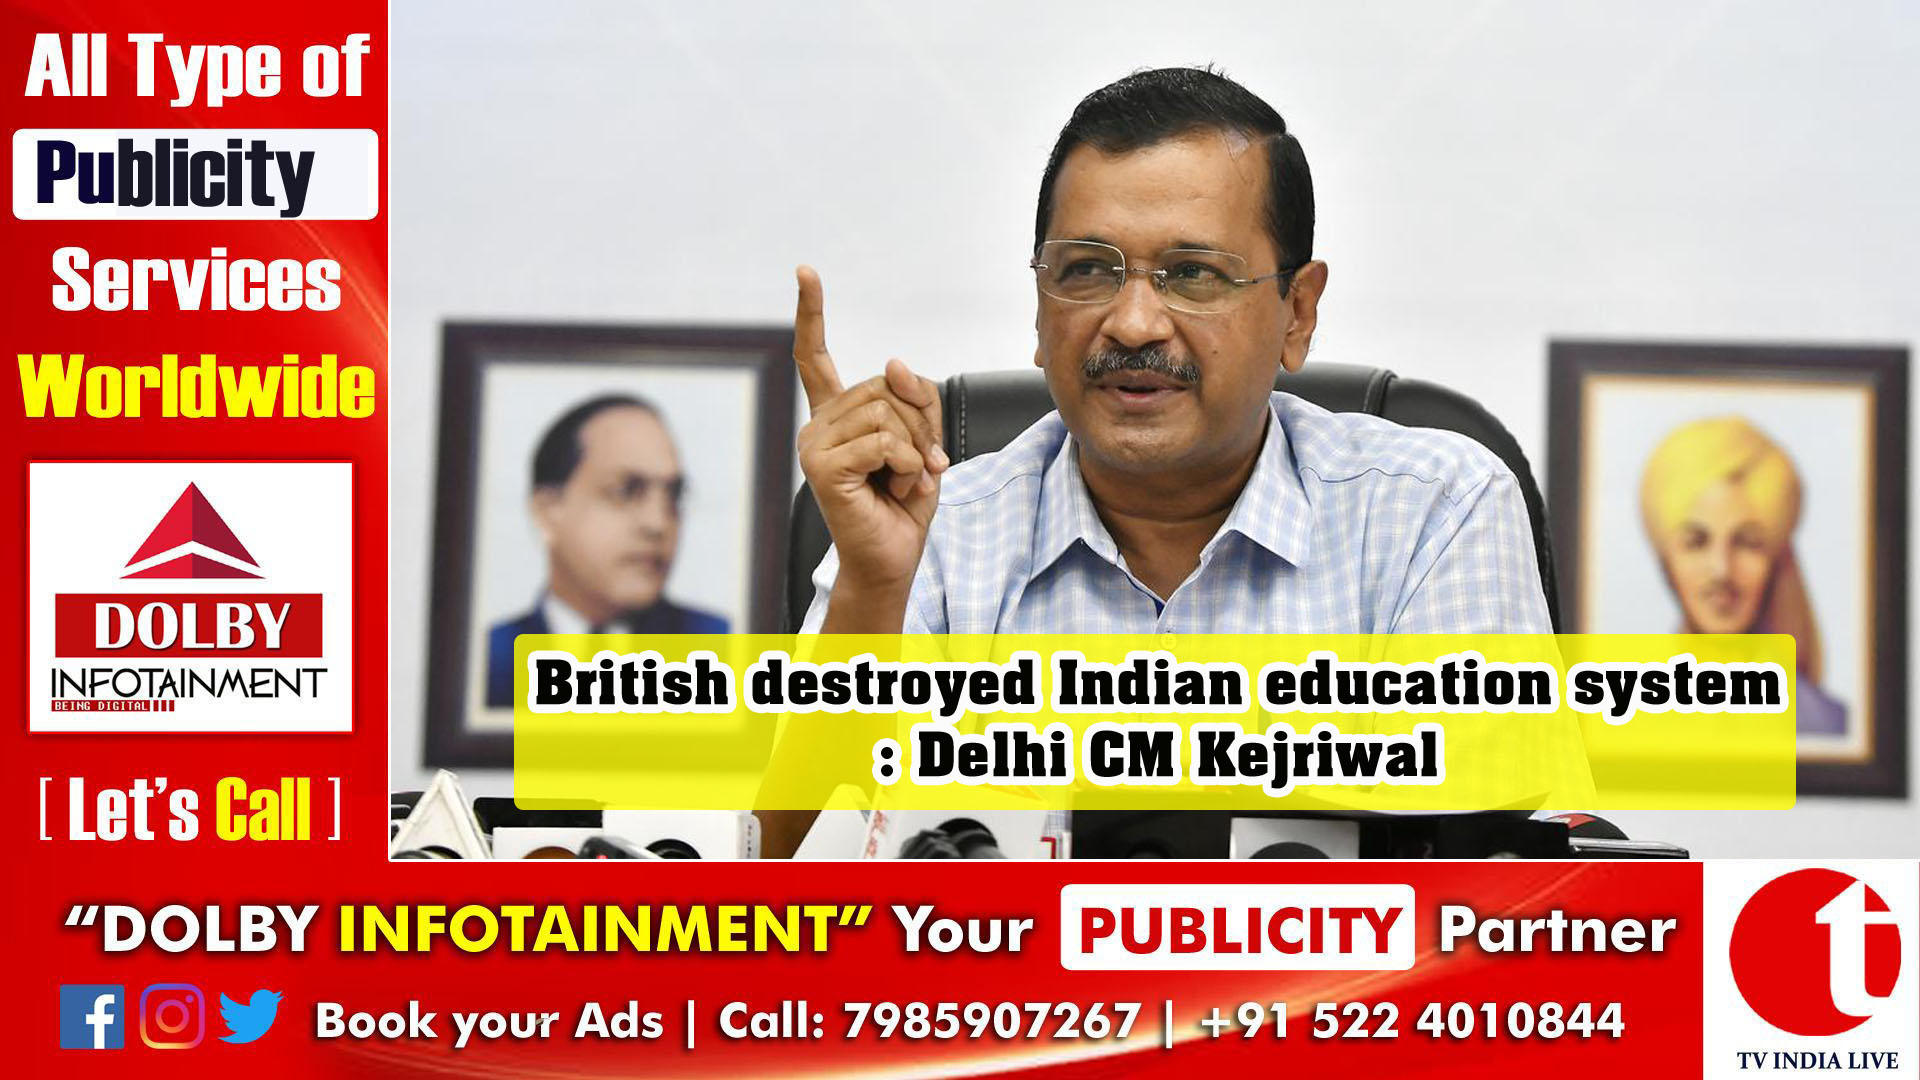 British destroyed Indian education system: Delhi CM Kejriwal